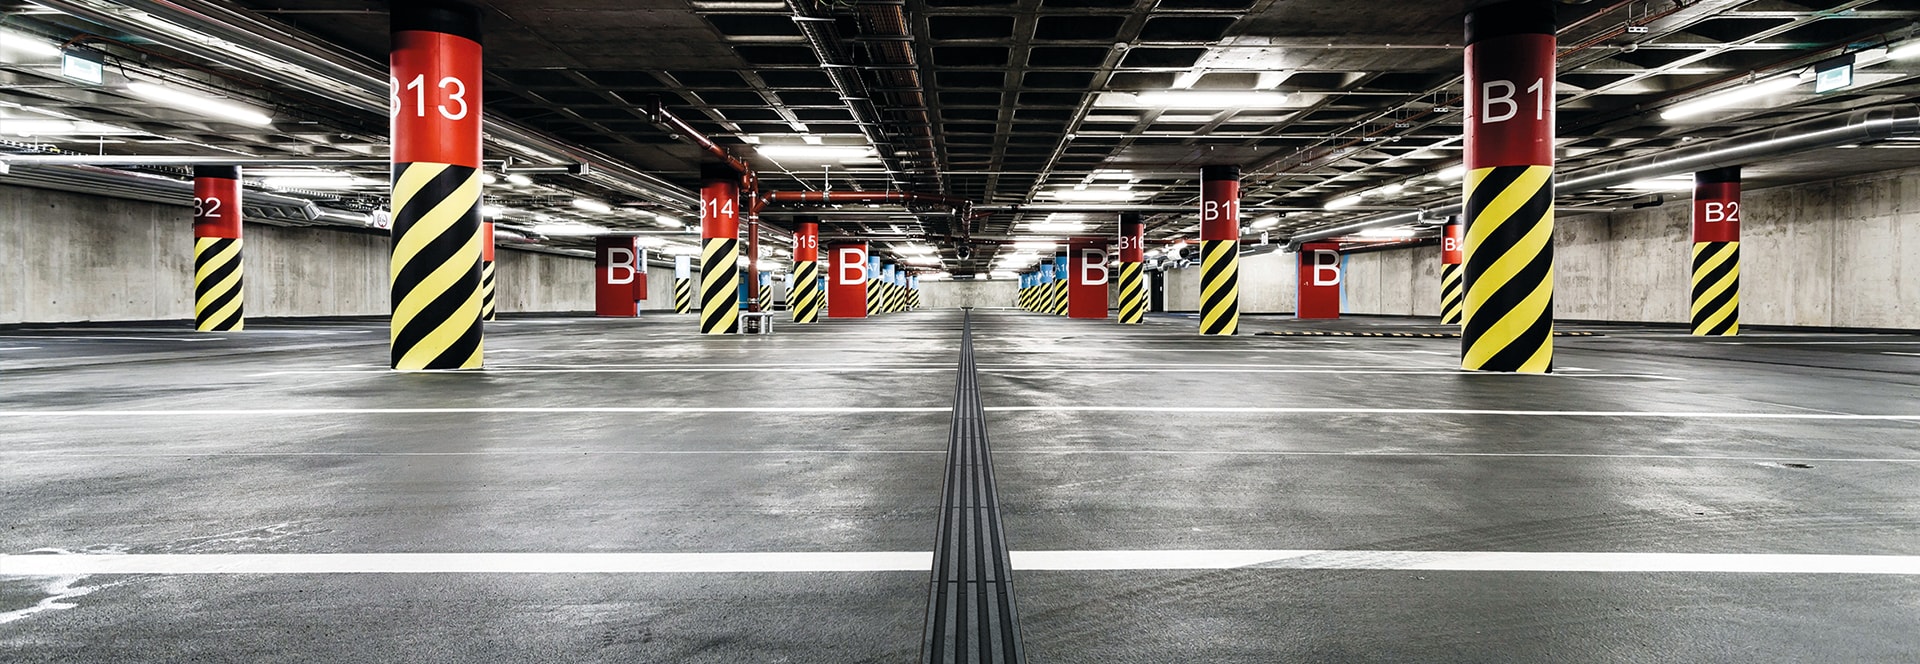 MEA - Zastosowanie produktu - odwodnienia-parkingi-garaże podziemne-01